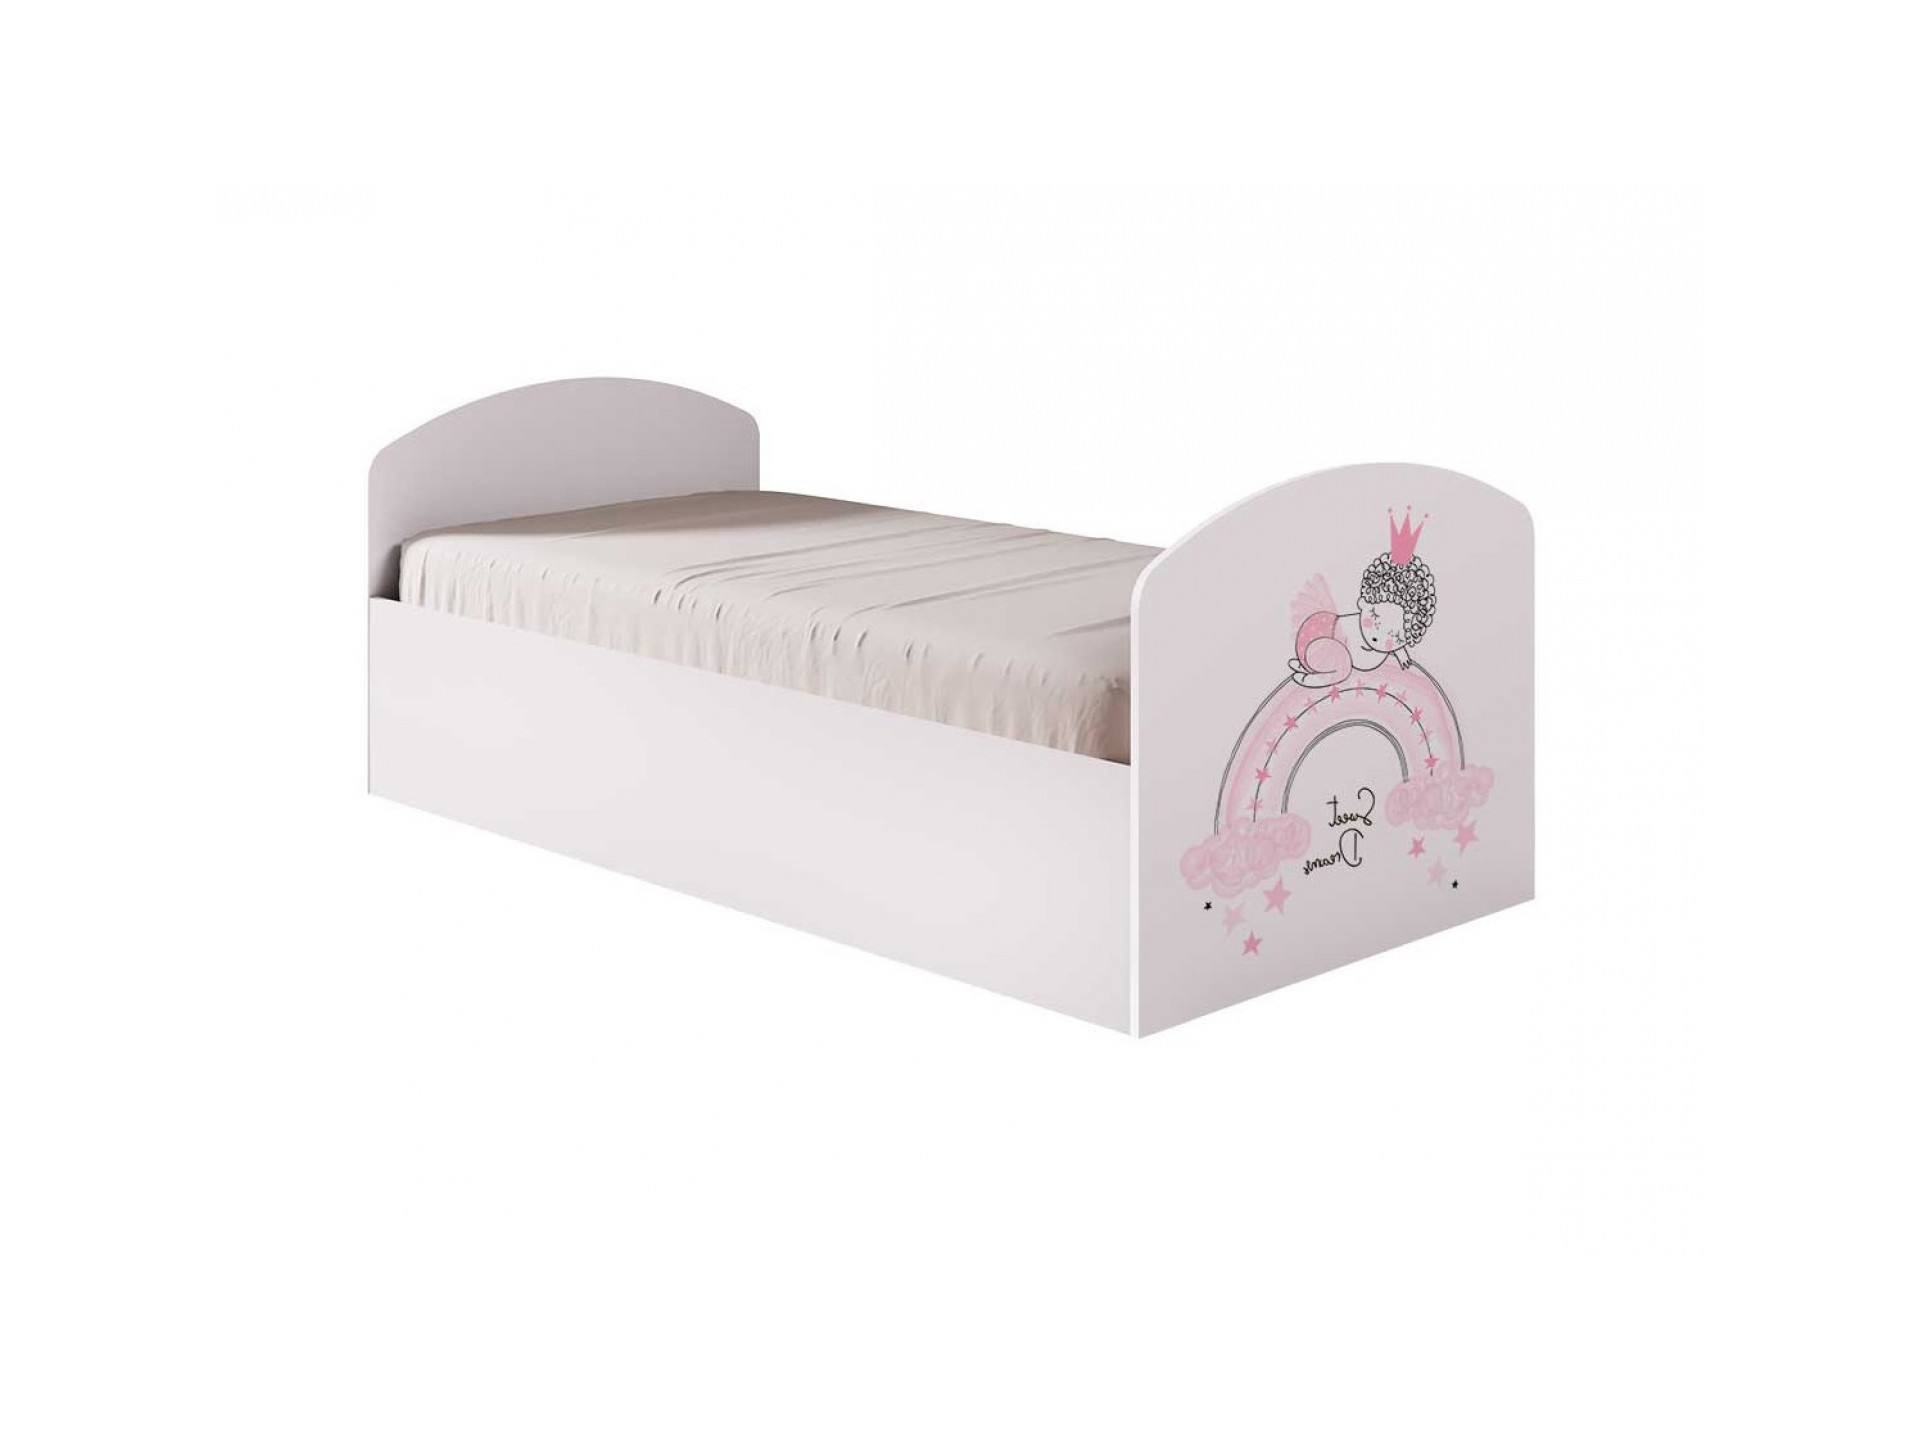 Юниор-2 Принцесса-1 Кровать ЛДСП с рисунком, ЛДСП кровать принцесса 160х200 принцесса